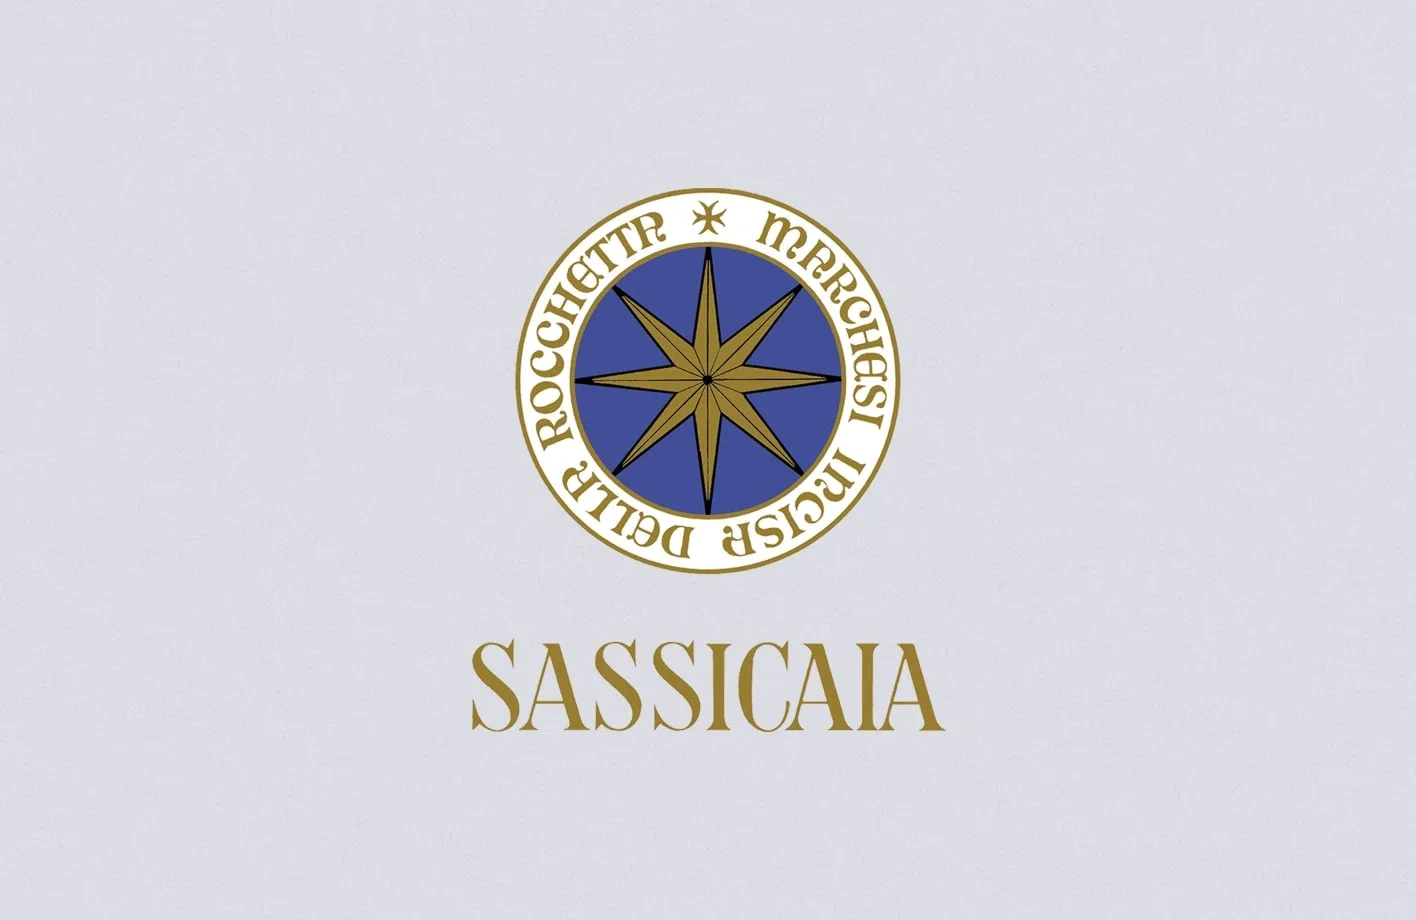 Sassicaia Italian Tuscany